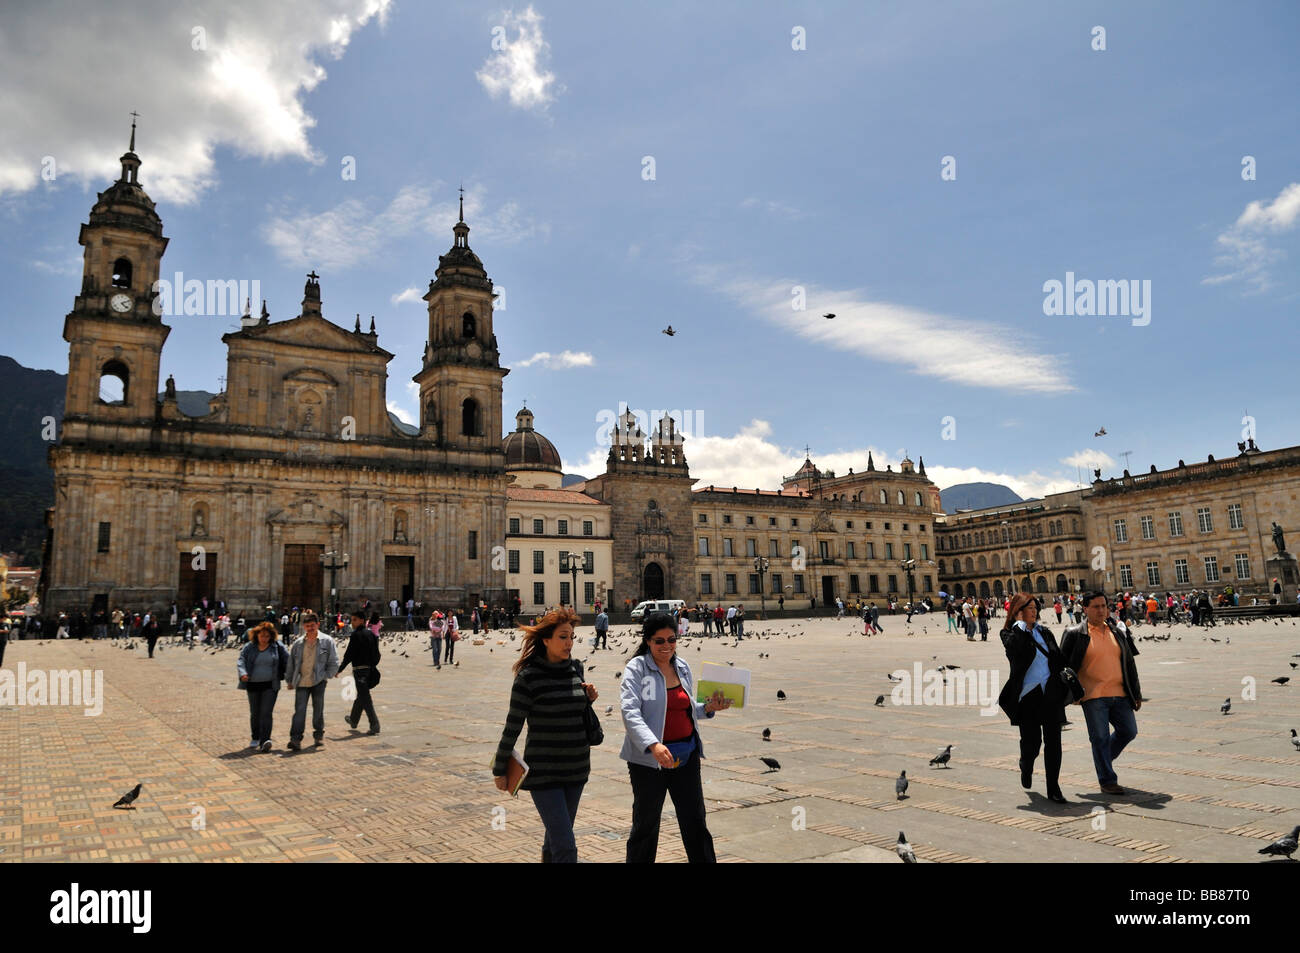 Cathédrale, Bolívar Square, Plaza de Bolívar, Bogotá, Colombie, Amérique du Sud Banque D'Images